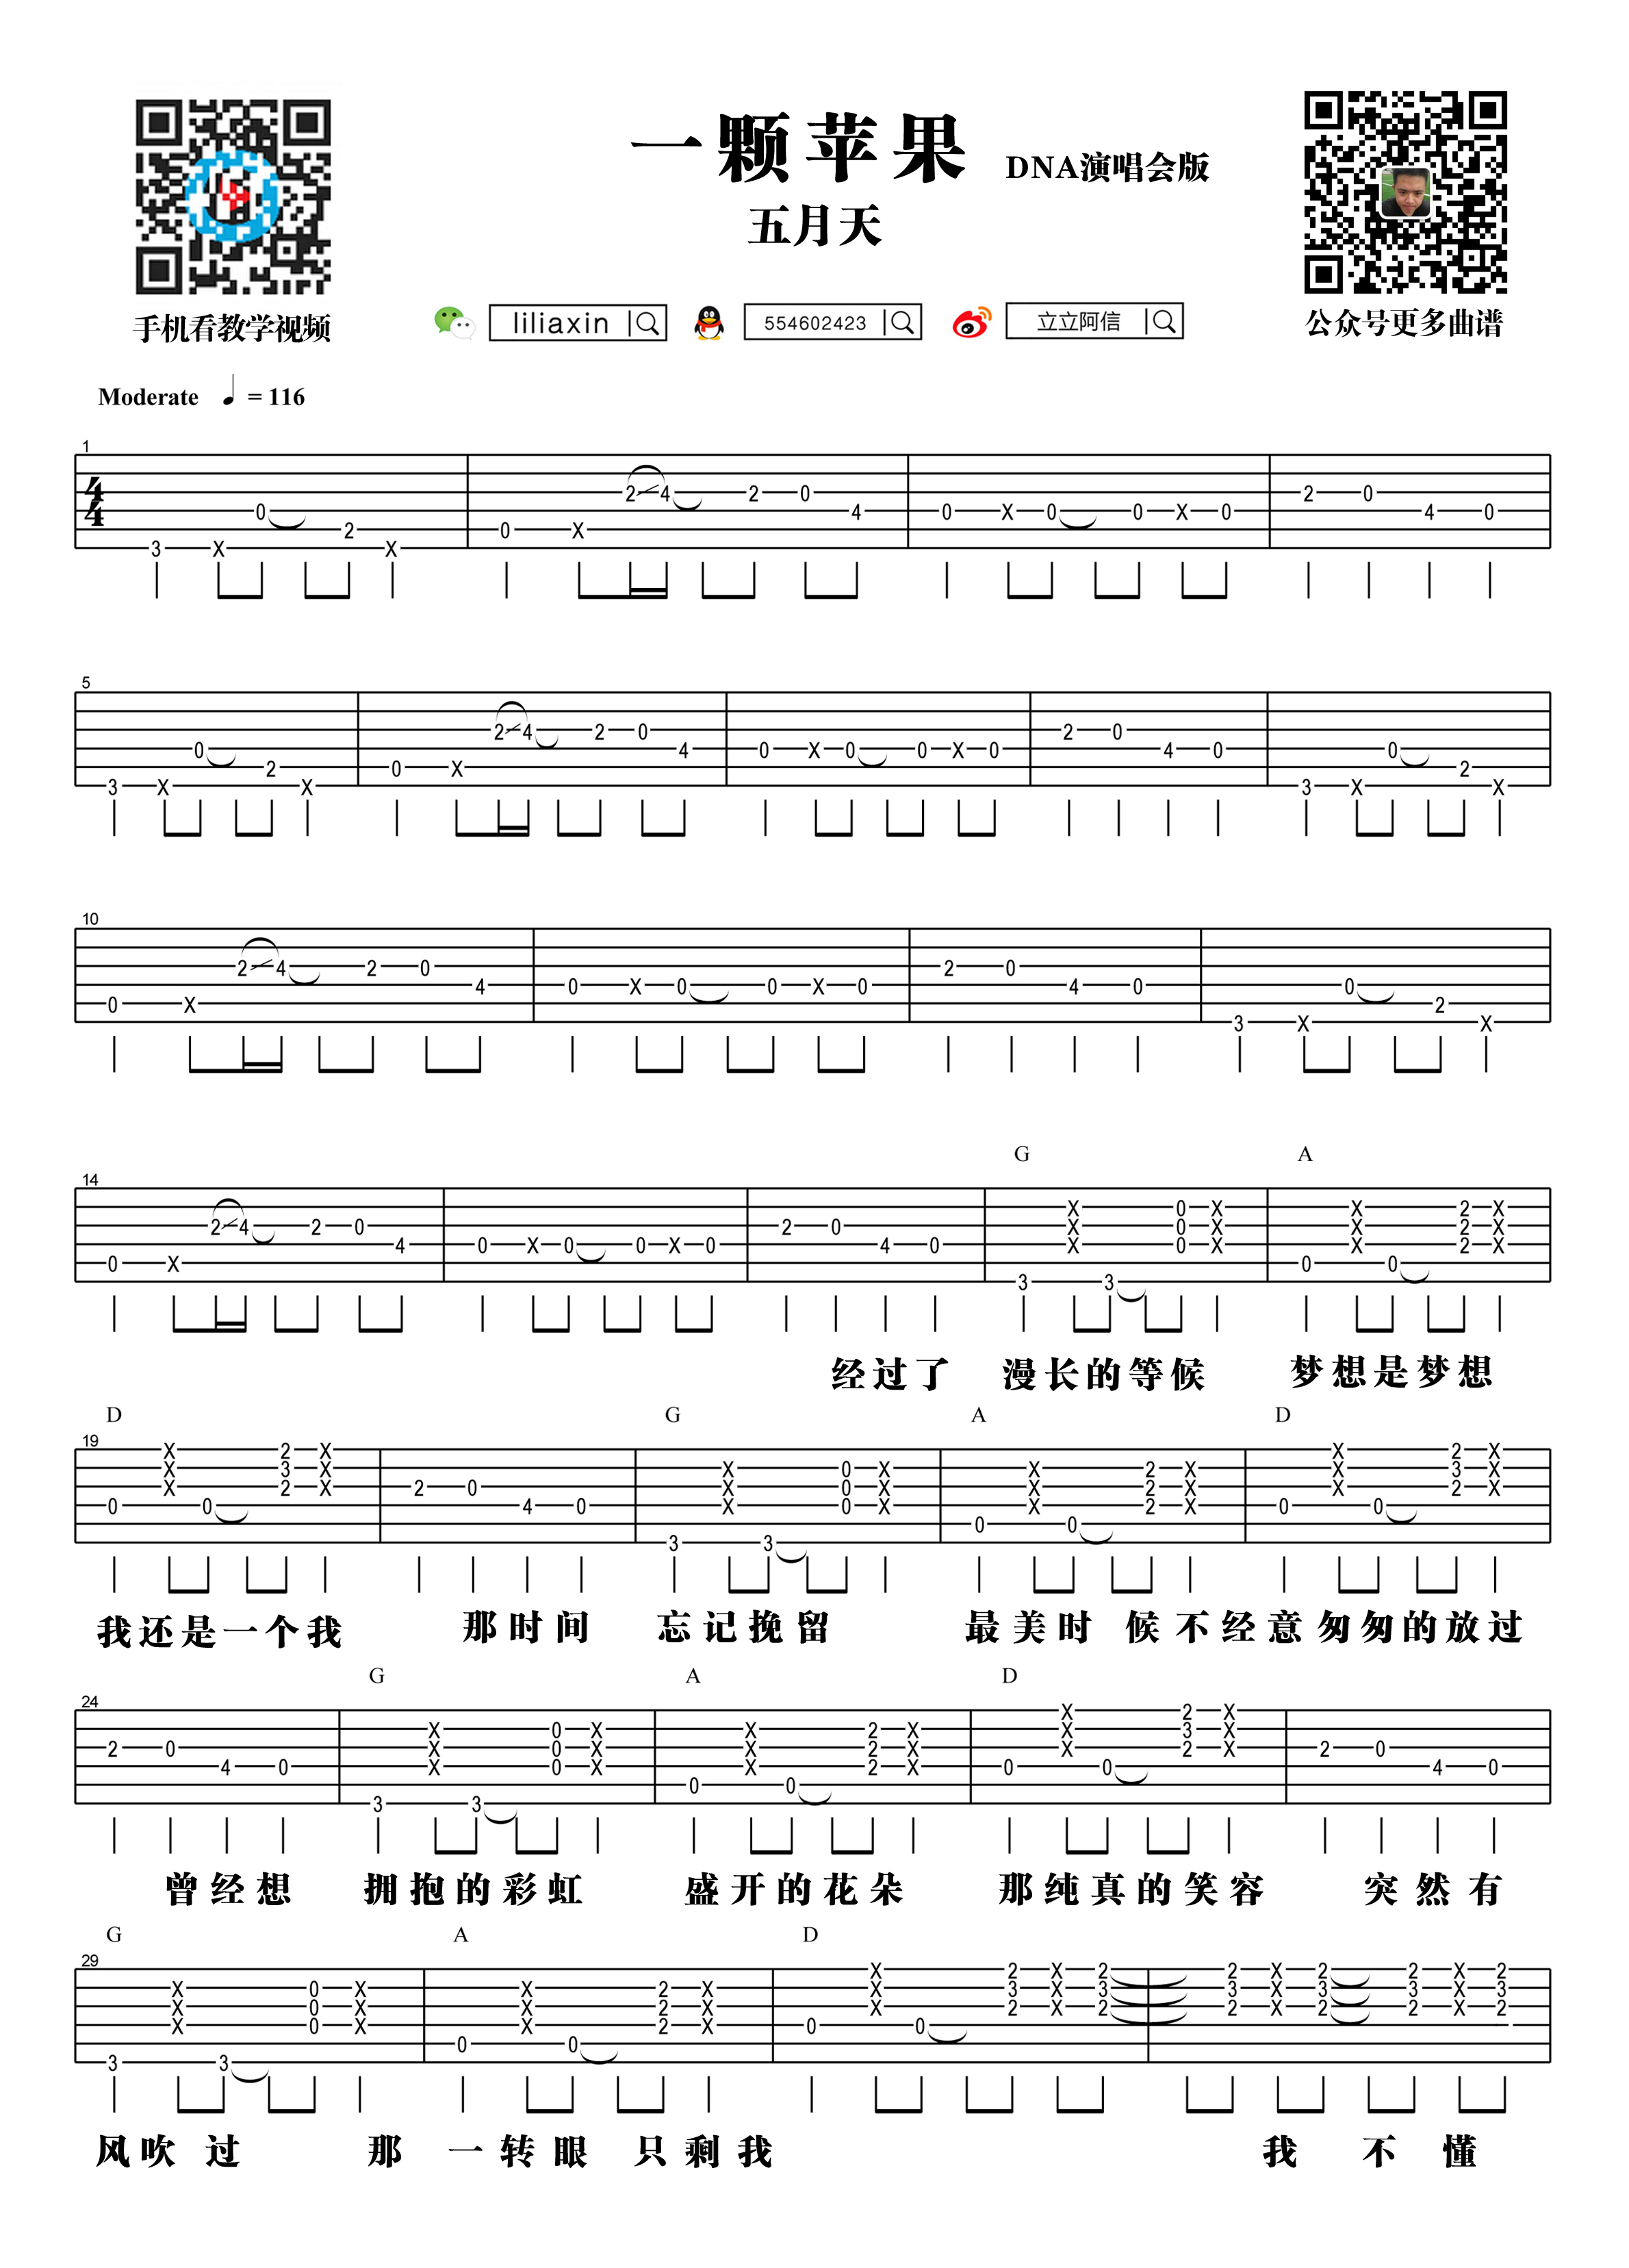 【阿信乐器】#23 五月天《一颗苹果》吉他教学吉他谱(图片谱,弹唱,教学)_五月天(Mayday)_1.jpg